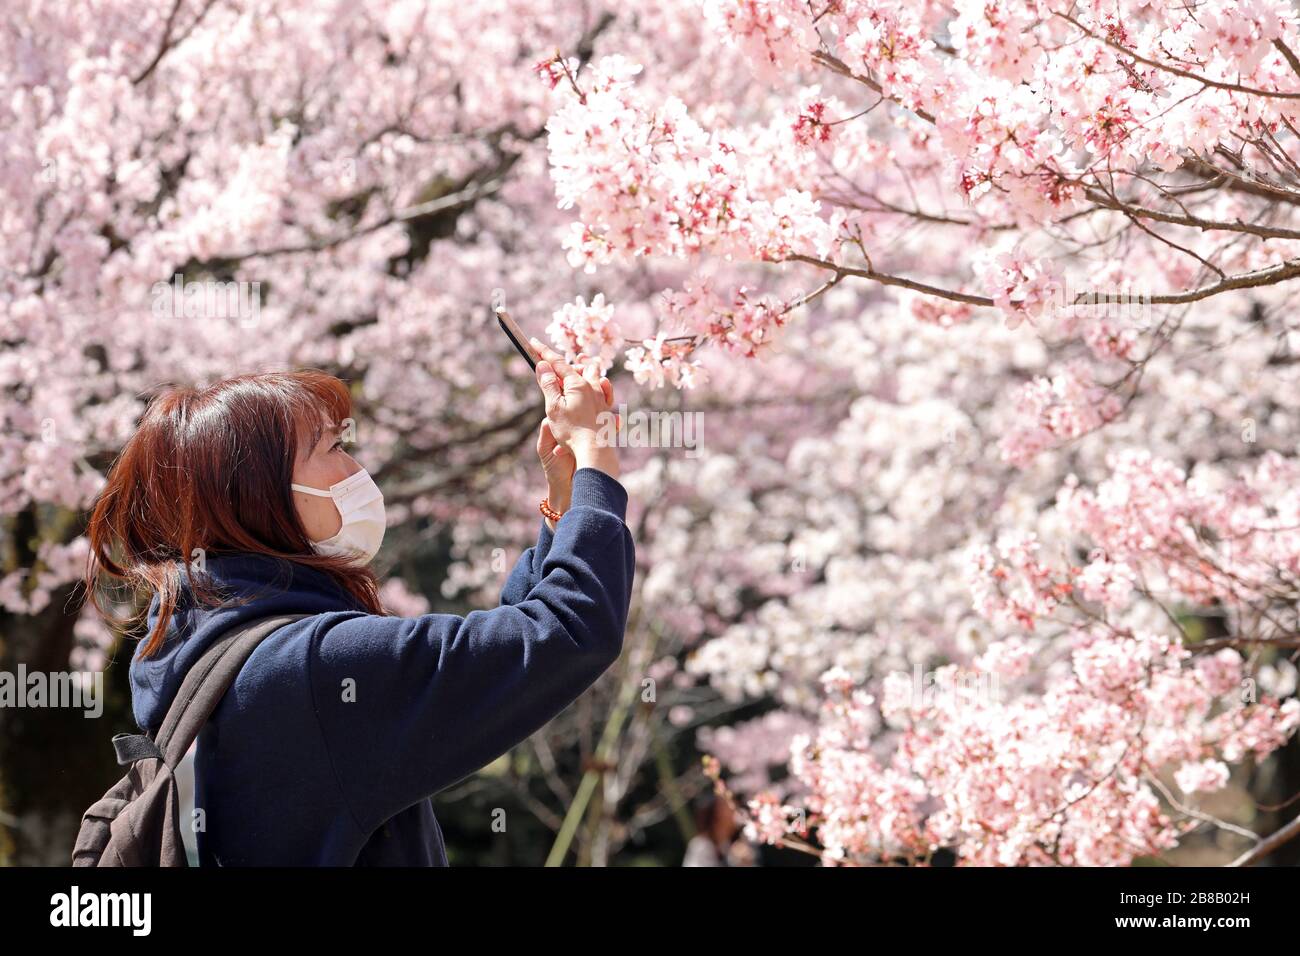 Tokyo, Japon. 21 mars 2020. La peur du Coronavirus n'a pas arrêté les Japonais de prendre part à leur observation annuelle de cerisiers en fleurs. Armés de masques faciaux, les foules se sont transformées comme d'habitude pour photographier les arbres en fleurs dans le parc national Shinjuku Gyoen de Tokyo, à Shinjuku, au Japon. Il y a eu des restrictions sur les pique-niques organisés habituels, et la foule a peut-être été plus mince que l'année dernière, mais cela n'a pas permis aux gens de profiter des fleurs et de mettre en place quelques pique-niques improvisés, mais avec un peu plus d'espace entre les groupes que d'habitude. Crédit: Paul Brown/Alay Live News Banque D'Images